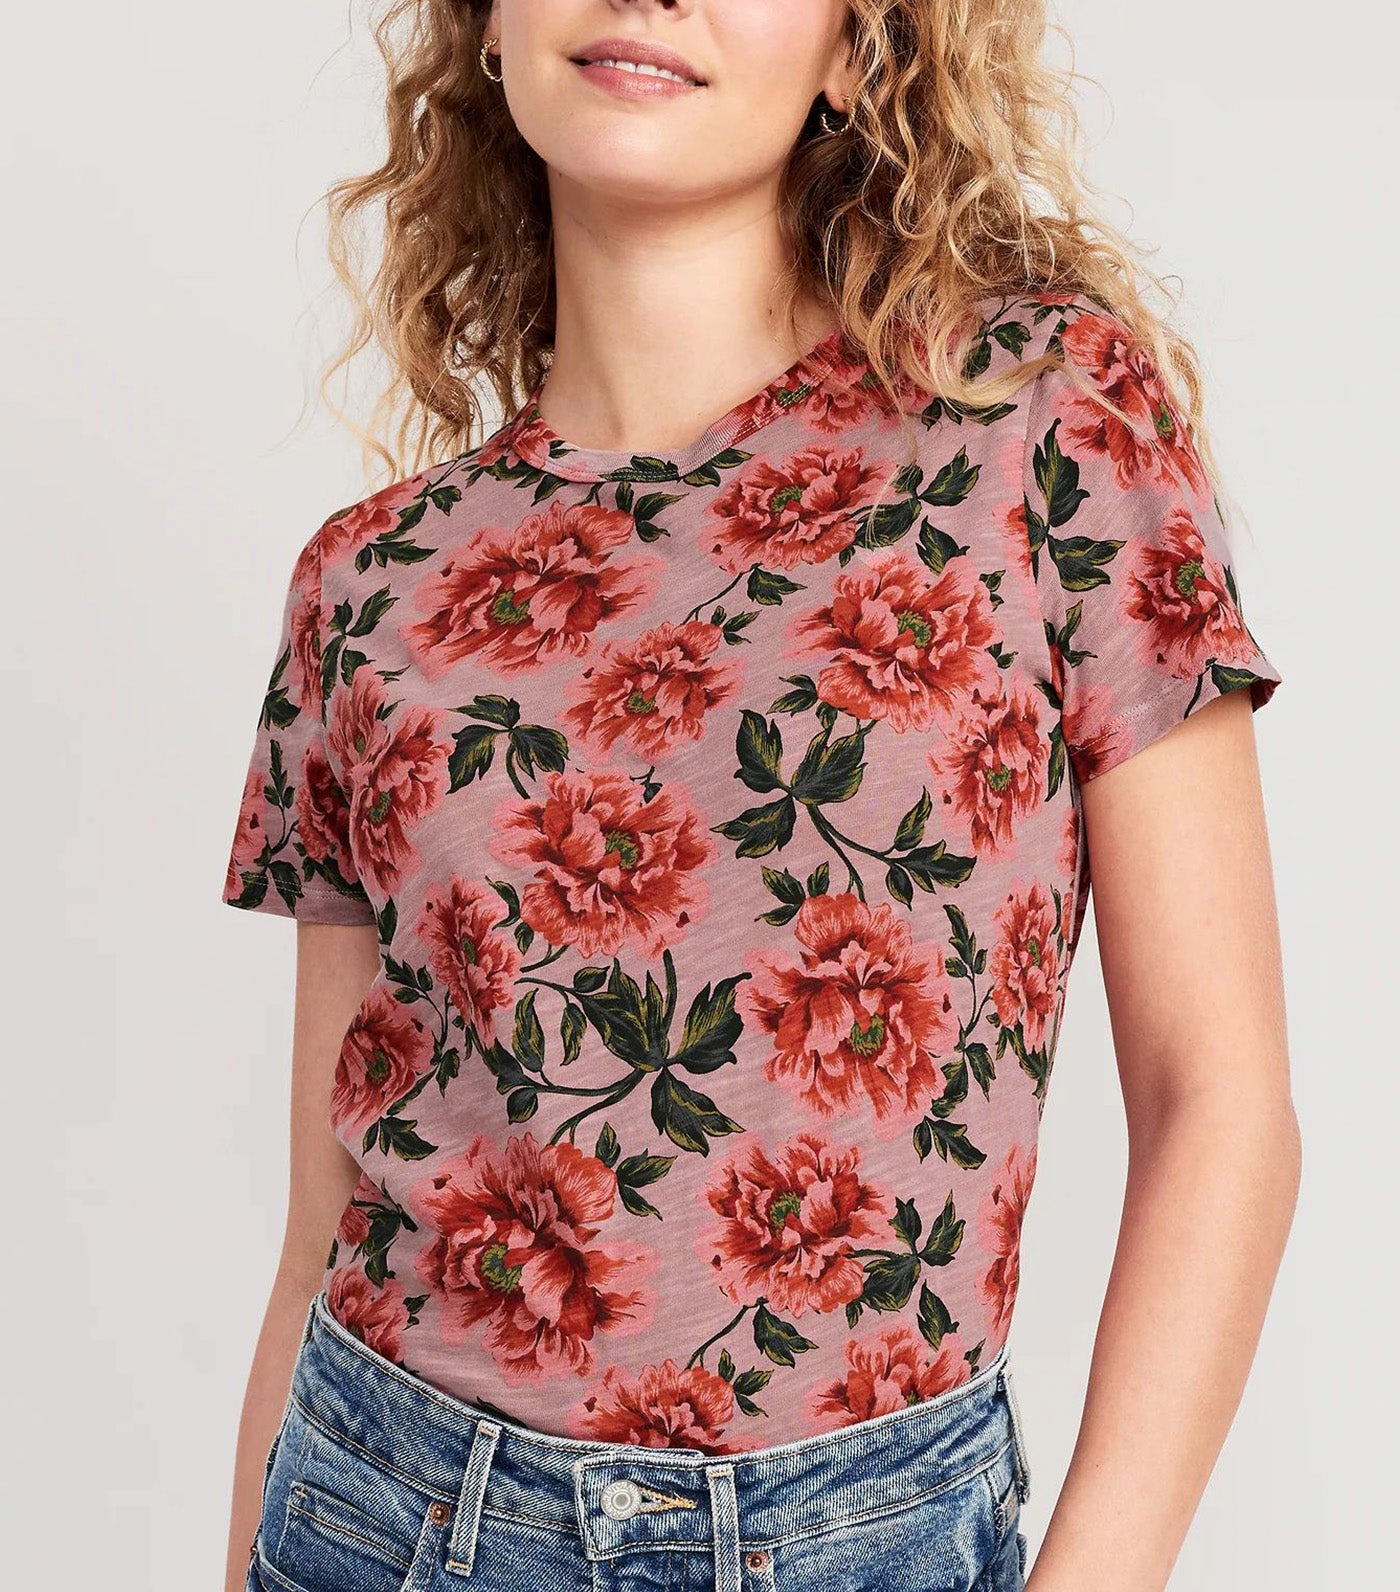 EveryWear Slub-Knit T-Shirt for Women Pink Floral